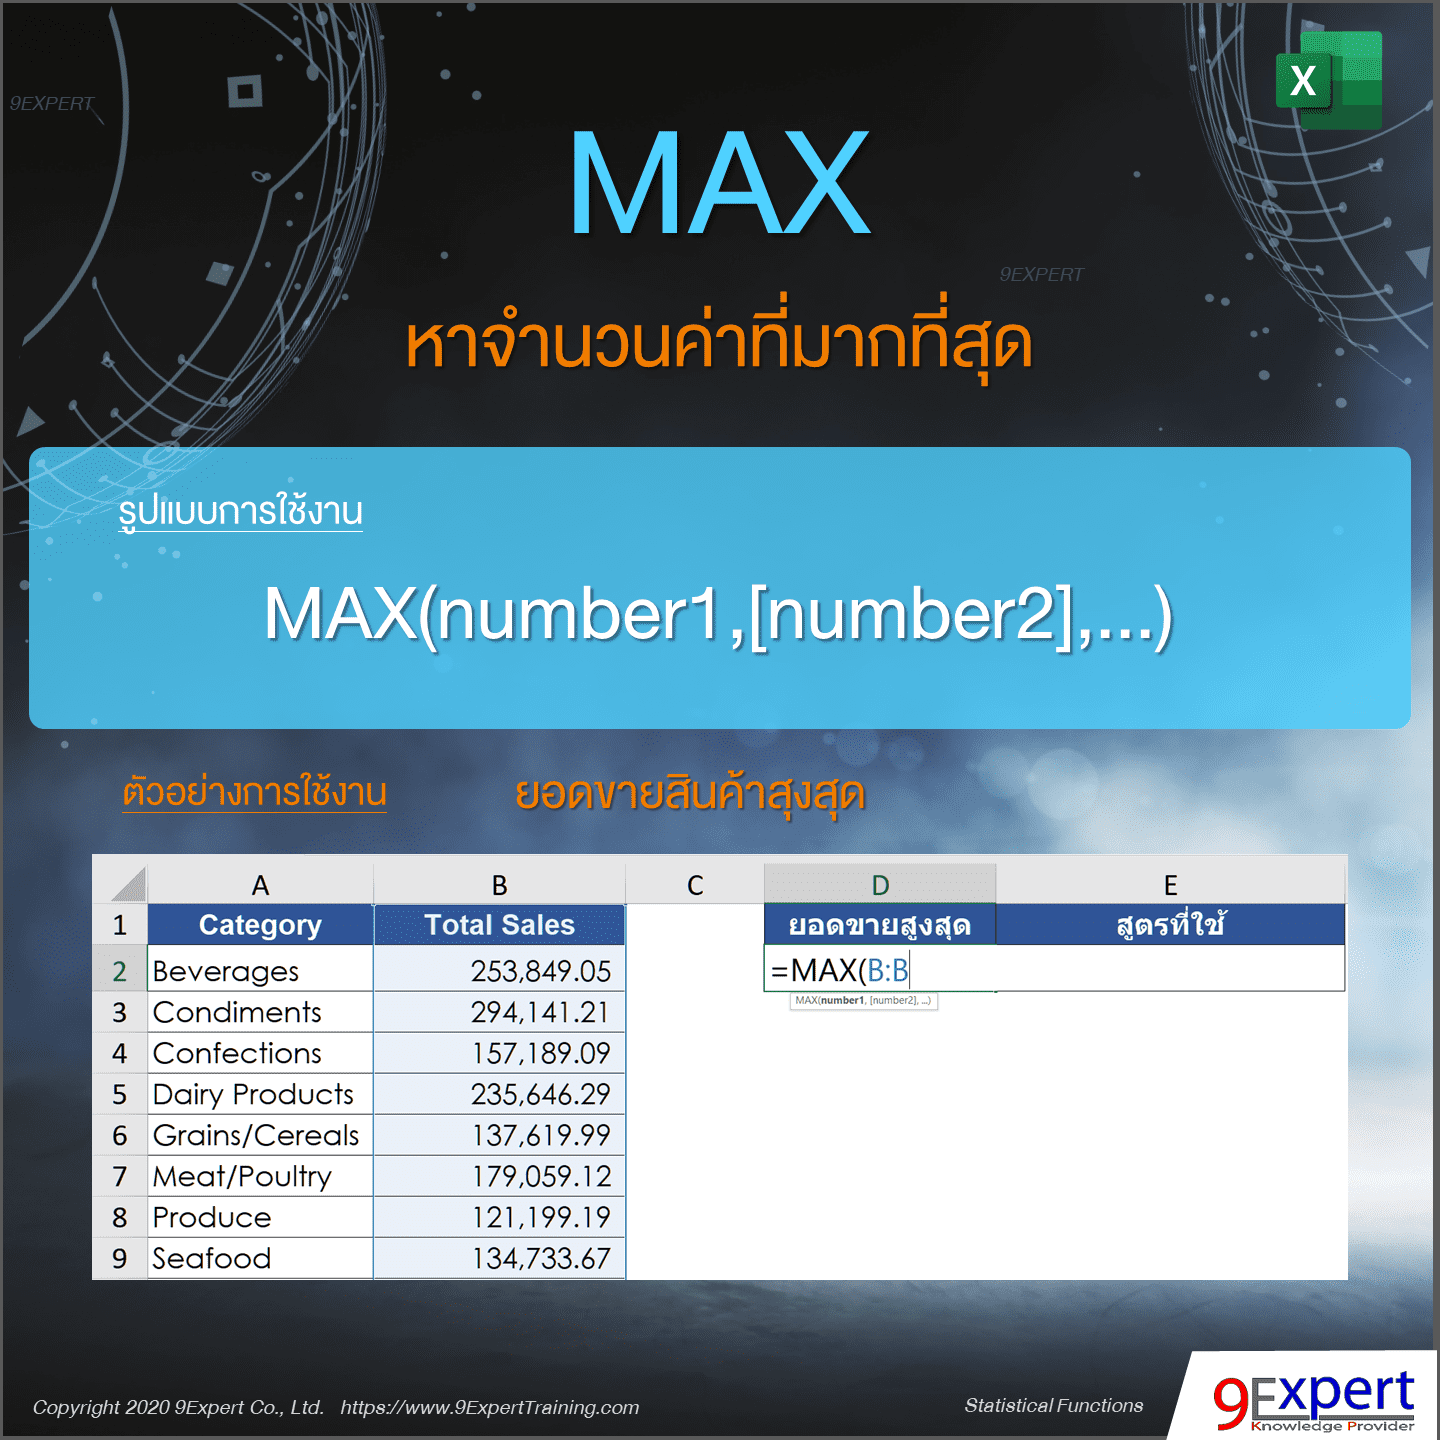 ตัวอย่างการใช้งานฟังก์ชัน MAX ของ Excel